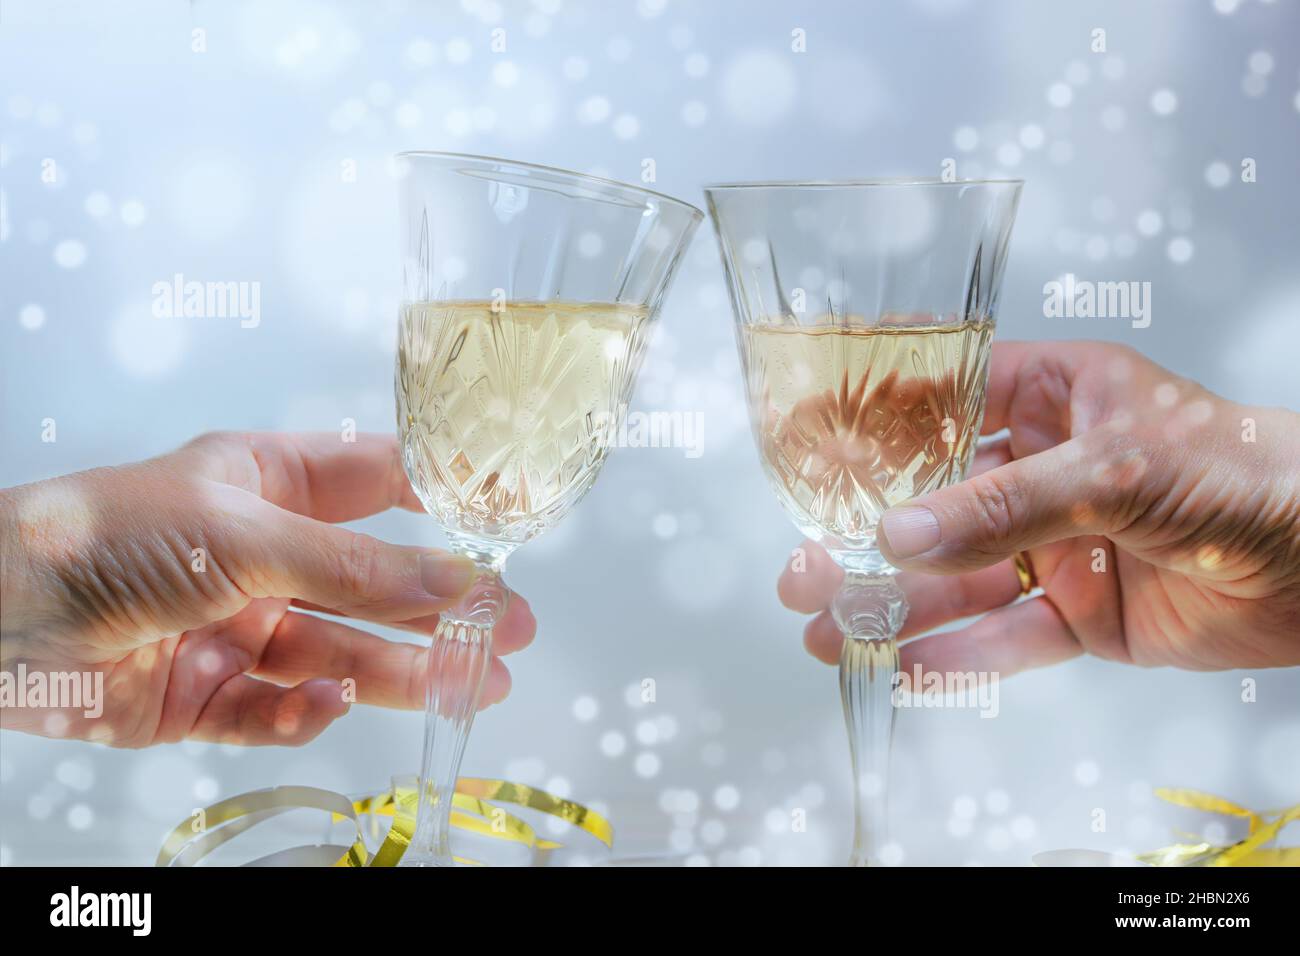 Toast à deux mains avec des verres à champagne lors d'une fête du nouvel an ou de Noël, fond clair et enneigé, mise au point sélectionnée, profondeur de champ étroite Banque D'Images